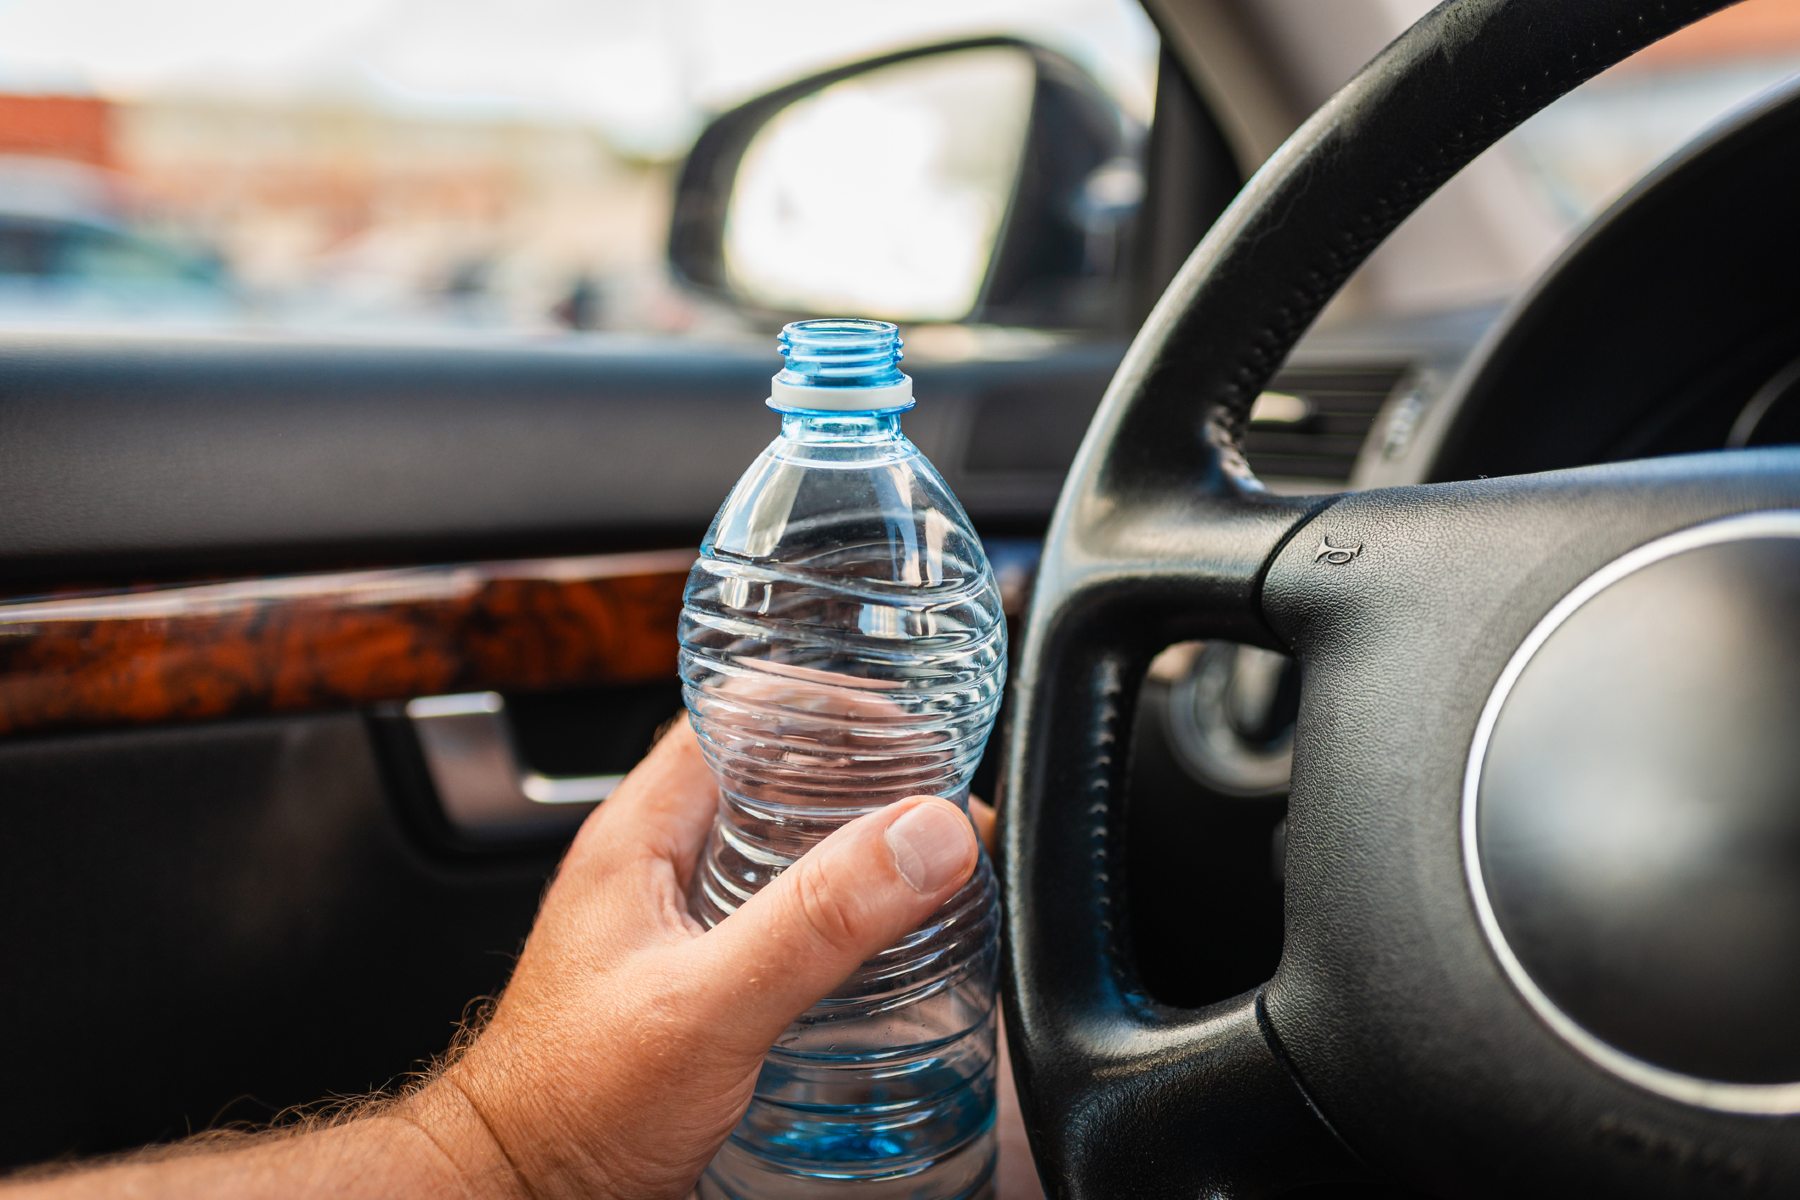 El peligroso truco de la botella: la nueva trampa para robar coches